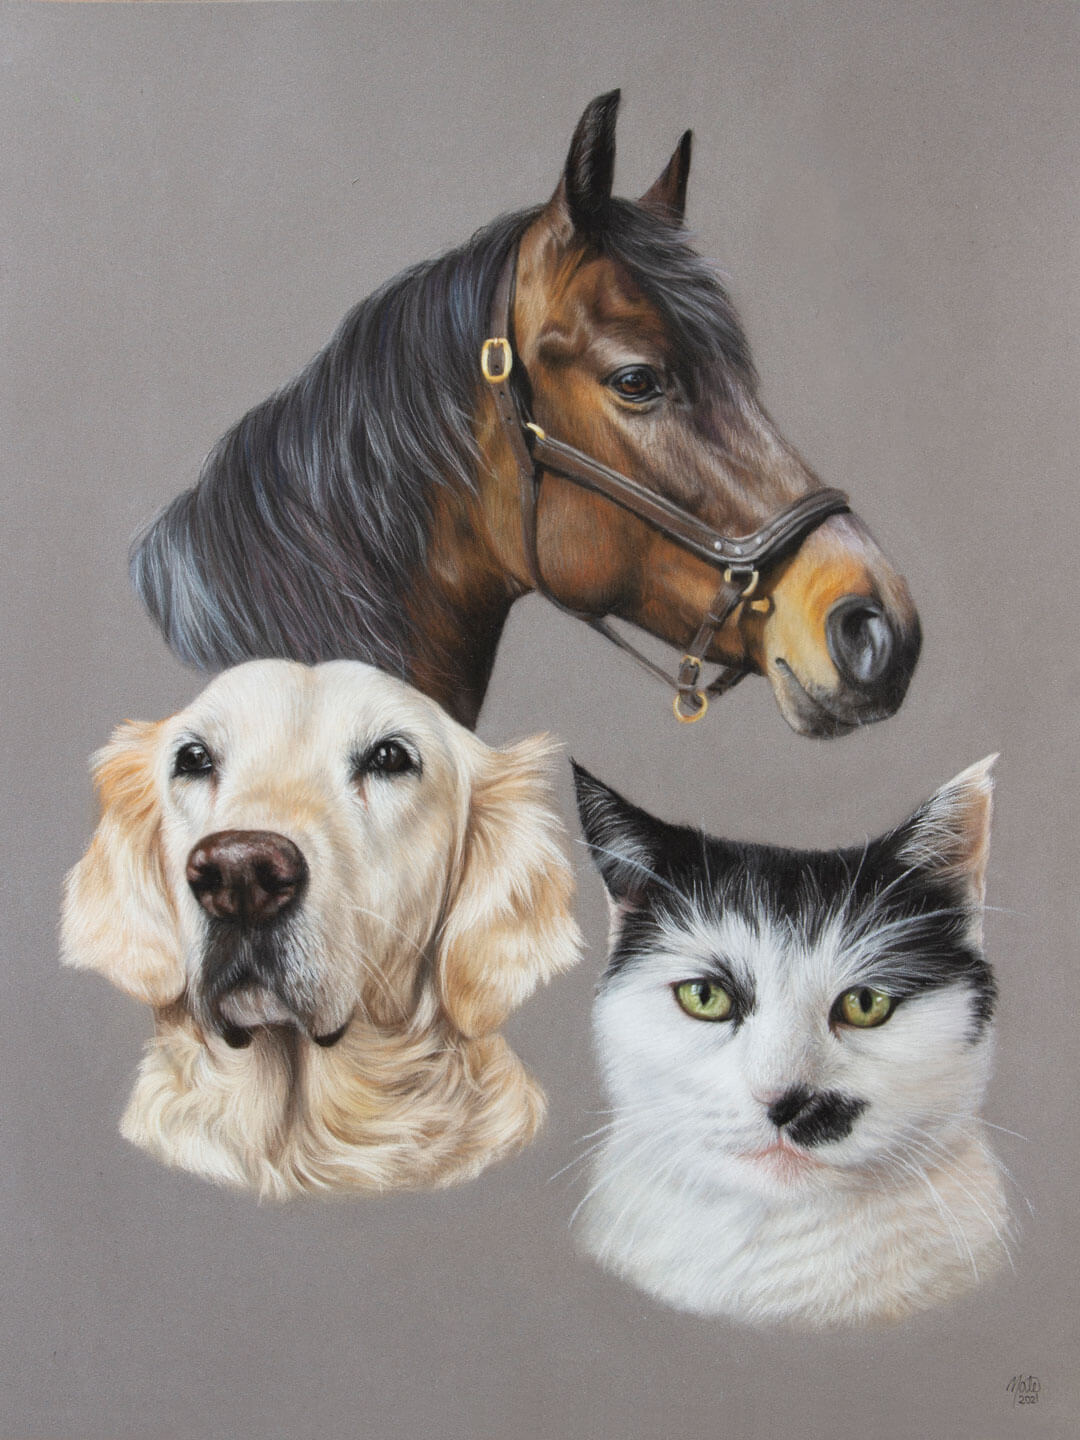 At hoppe Gammeldags Sprængstoffer Galleri - Se mine tegninger af heste, hunde og andre dyr | By Mate